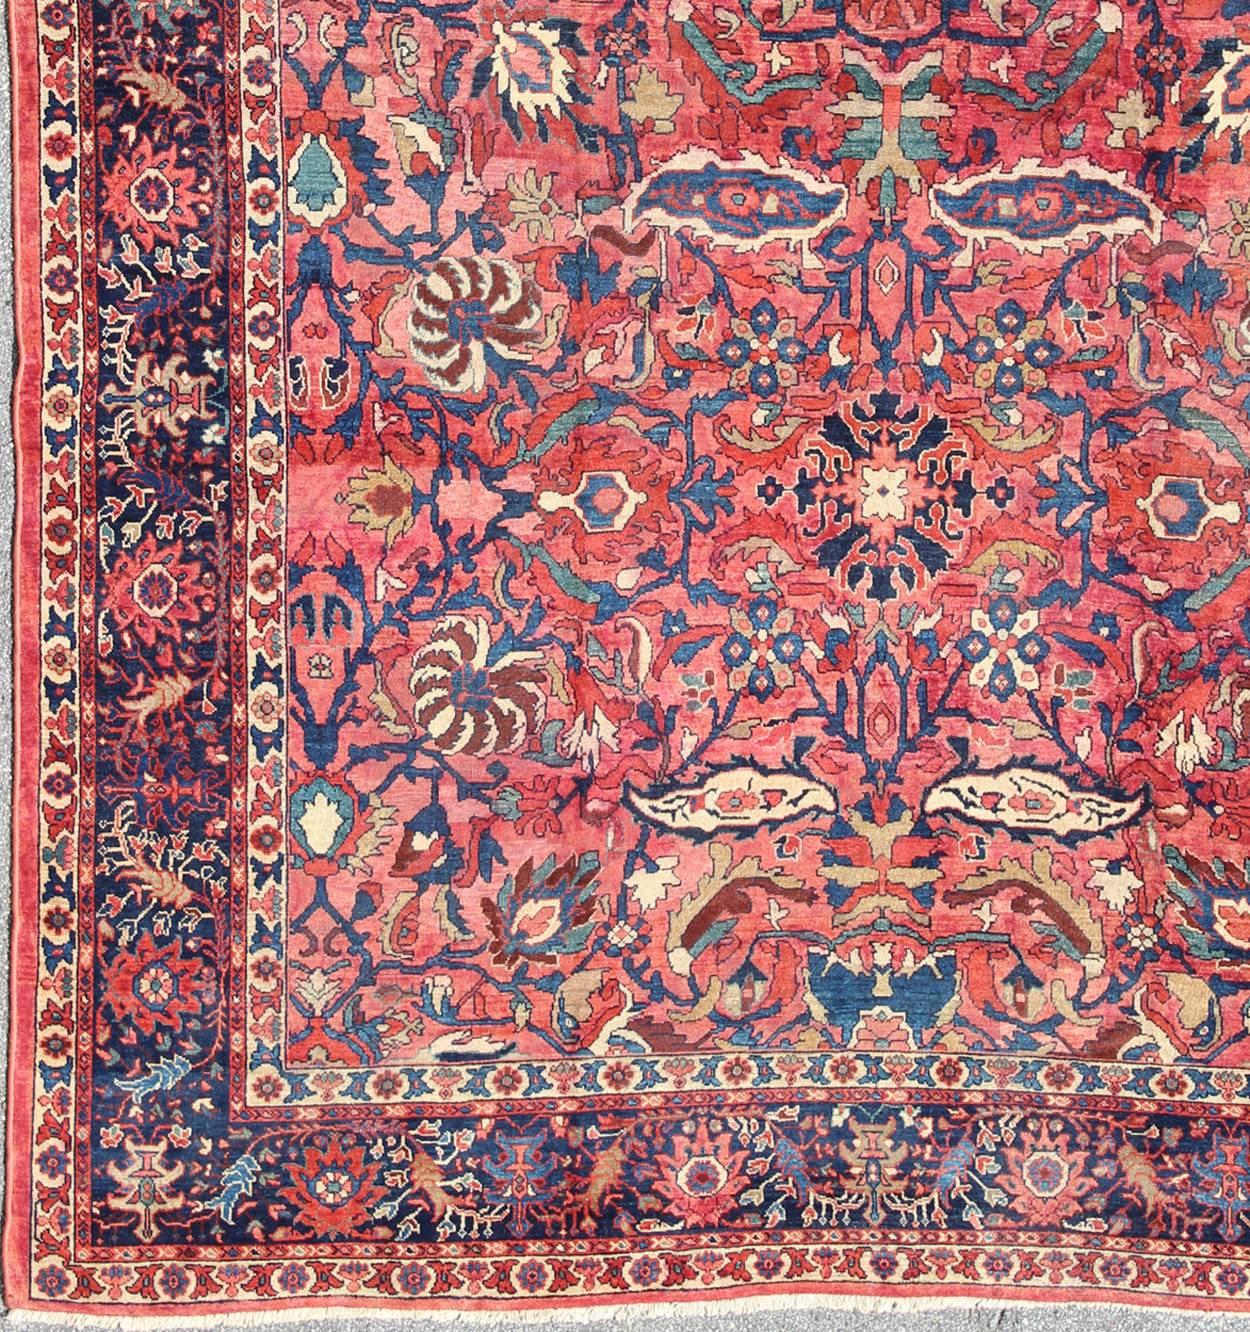 Ancien tapis persan Sultanabad avec de grandes palmettes et des fleurs en rouge rose. Rouge rosé et bleu. 11-20207, 10'8 x 14'8 Persan ancien. Cet ancien sultanabad persan des années 1900 s'appuie fortement sur des détails exquis ainsi que sur des